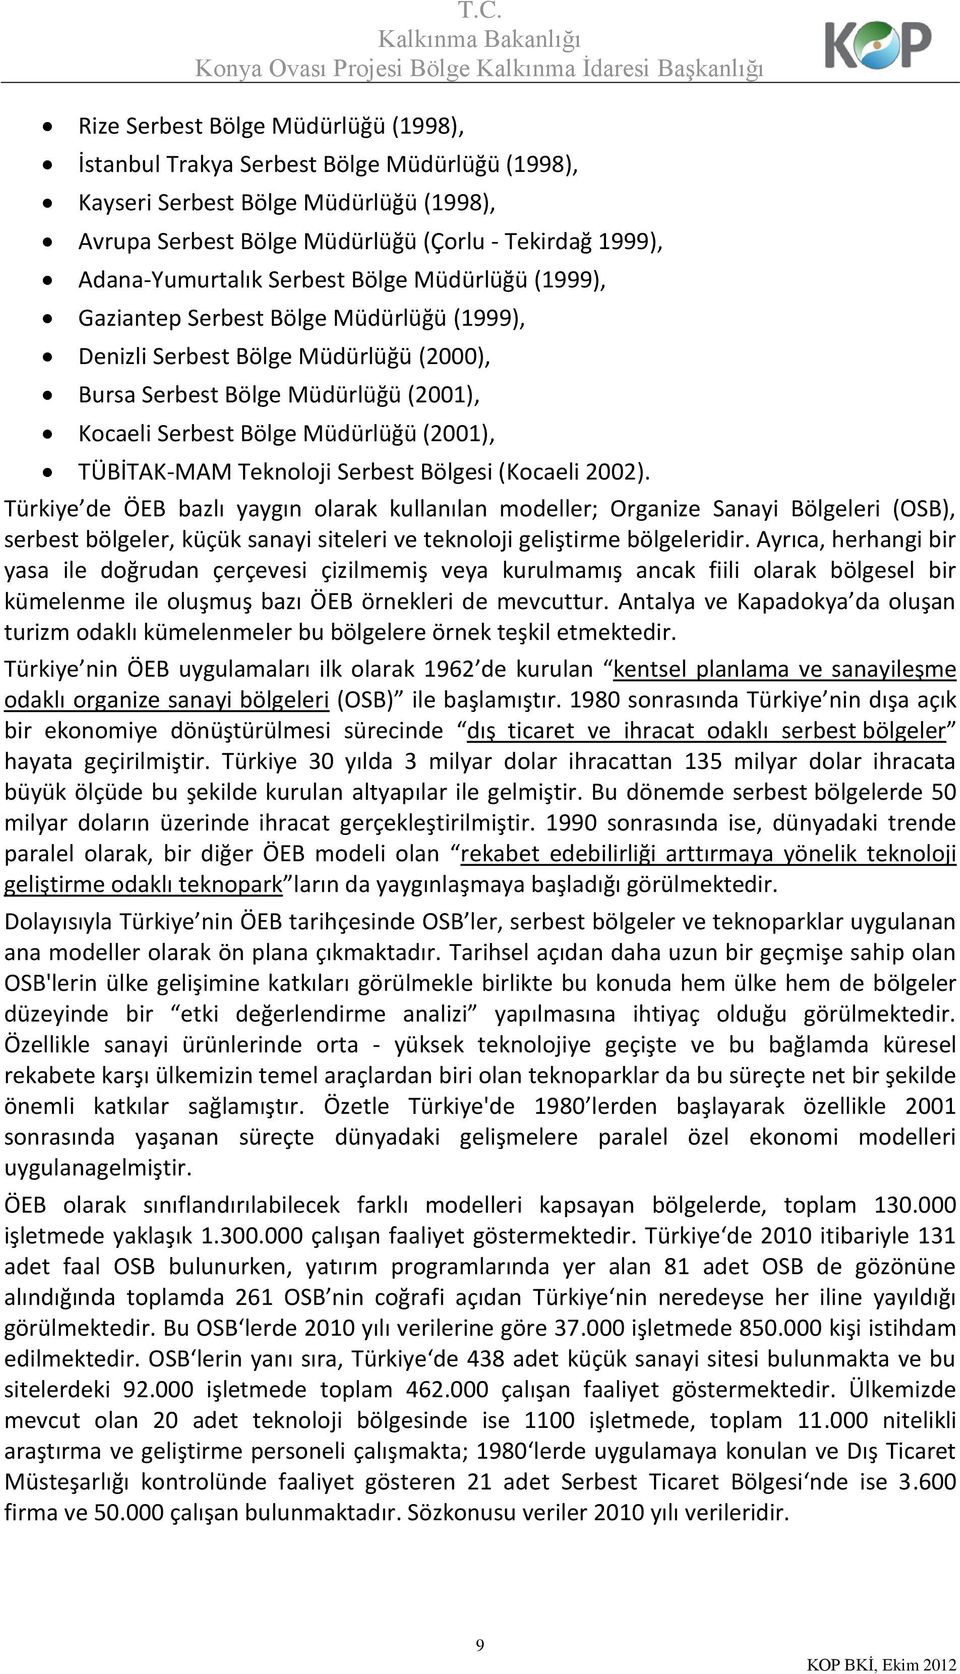 TÜBİTAK-MAM Teknoloji Serbest Bölgesi (Kocaeli 2002).